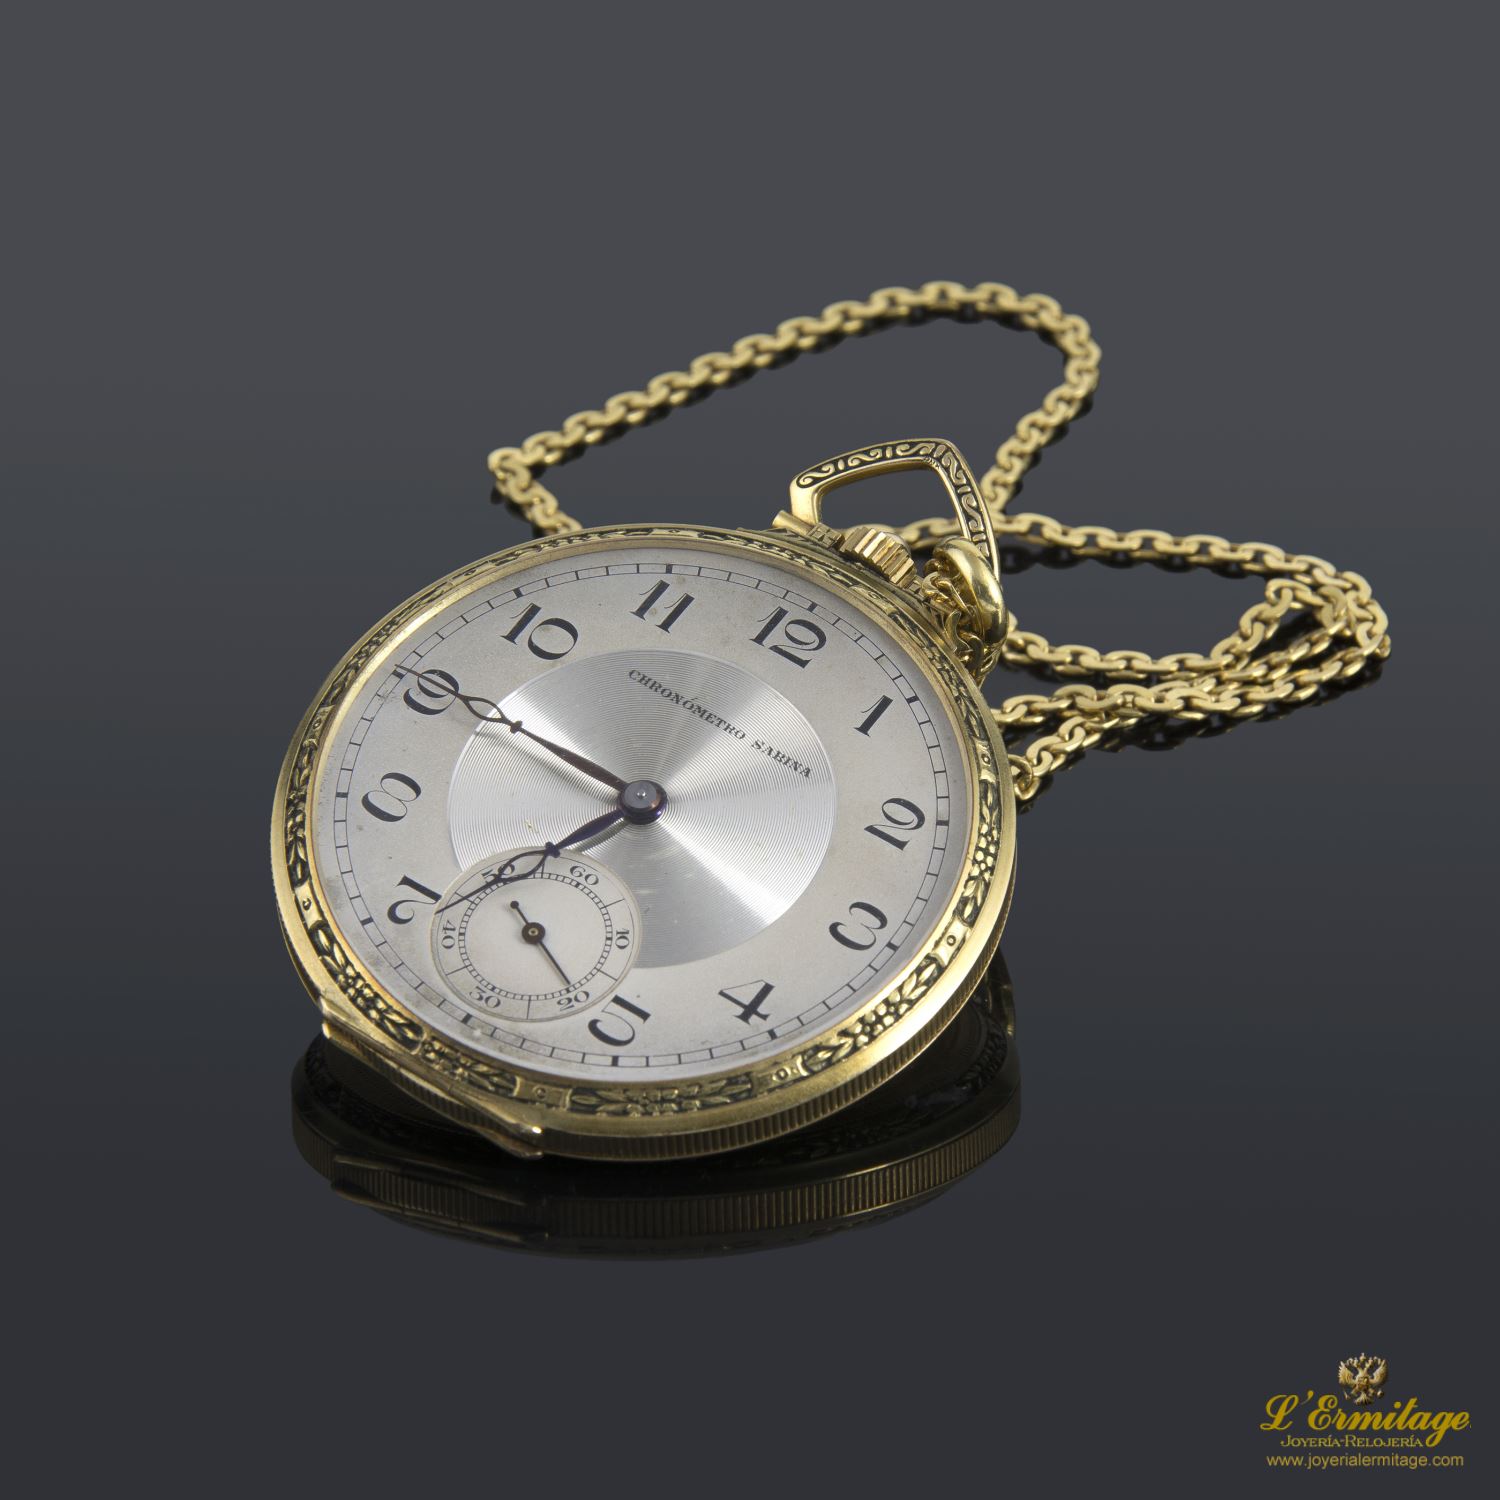 Transición Automáticamente Adaptado Reloj De Bolsillo Lepine. · Compra Venta de Relojes de Lujo y Joyas ·  Joyería L'Ermitage